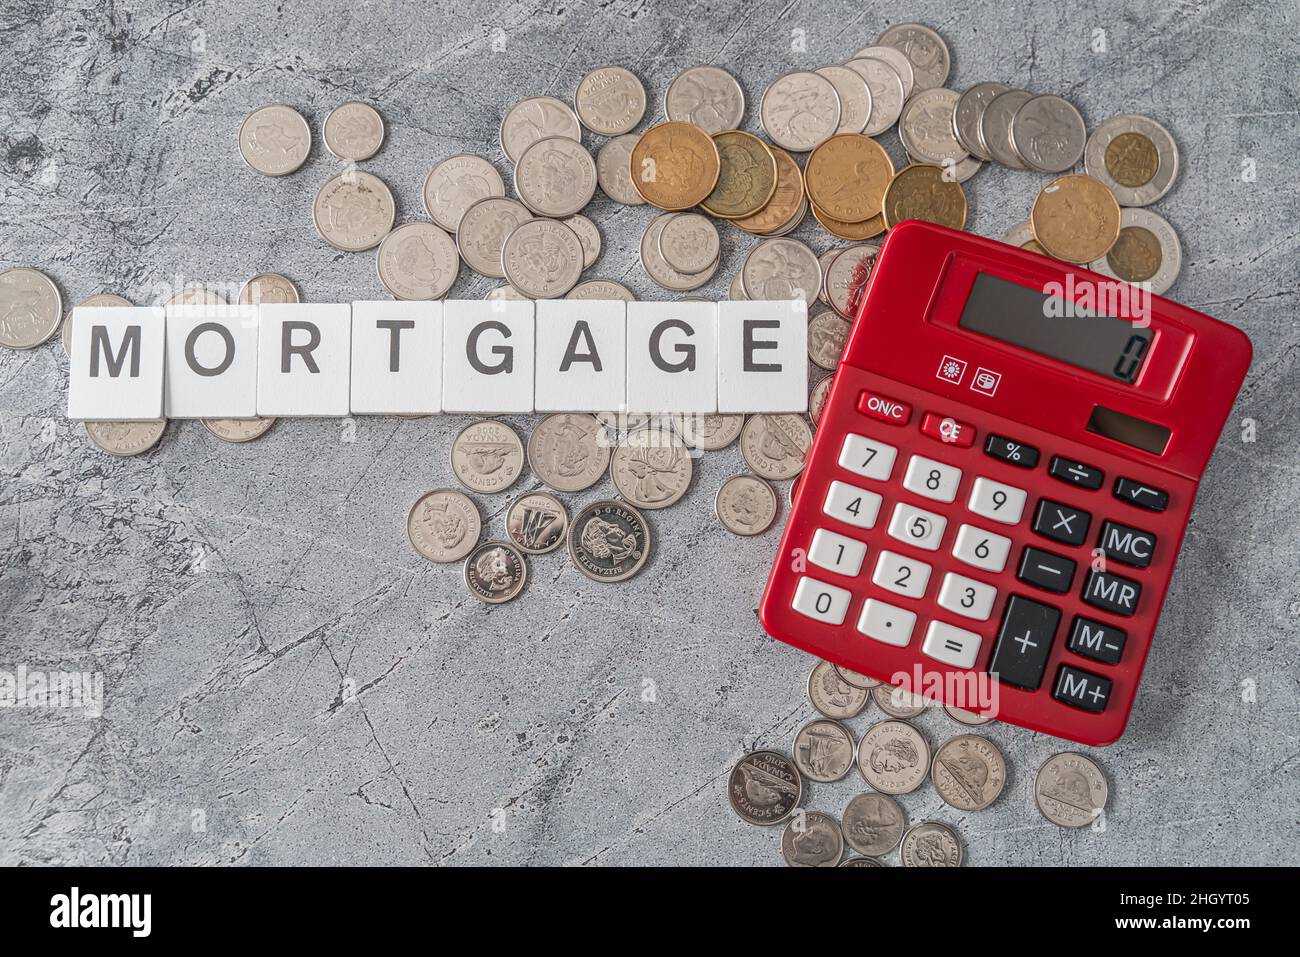 Roter Rechner mit Hypothekenschild - Haus Finanzierung Hypothek Konzept Stockfoto